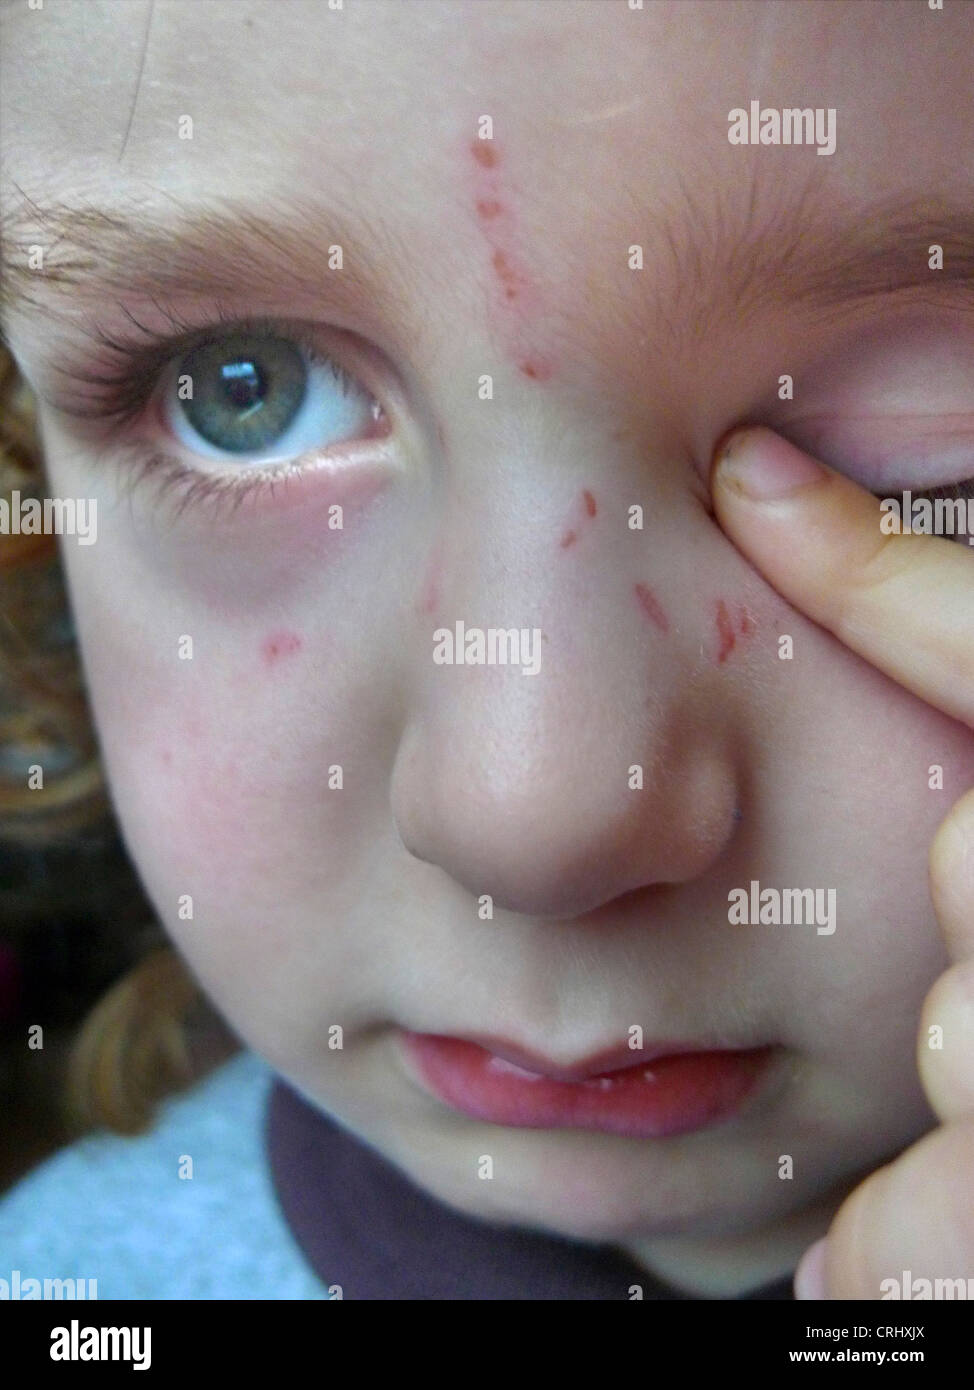 Kleine Traurige Junge Mit Narben Im Gesicht Kratzen Stockfotografie Alamy